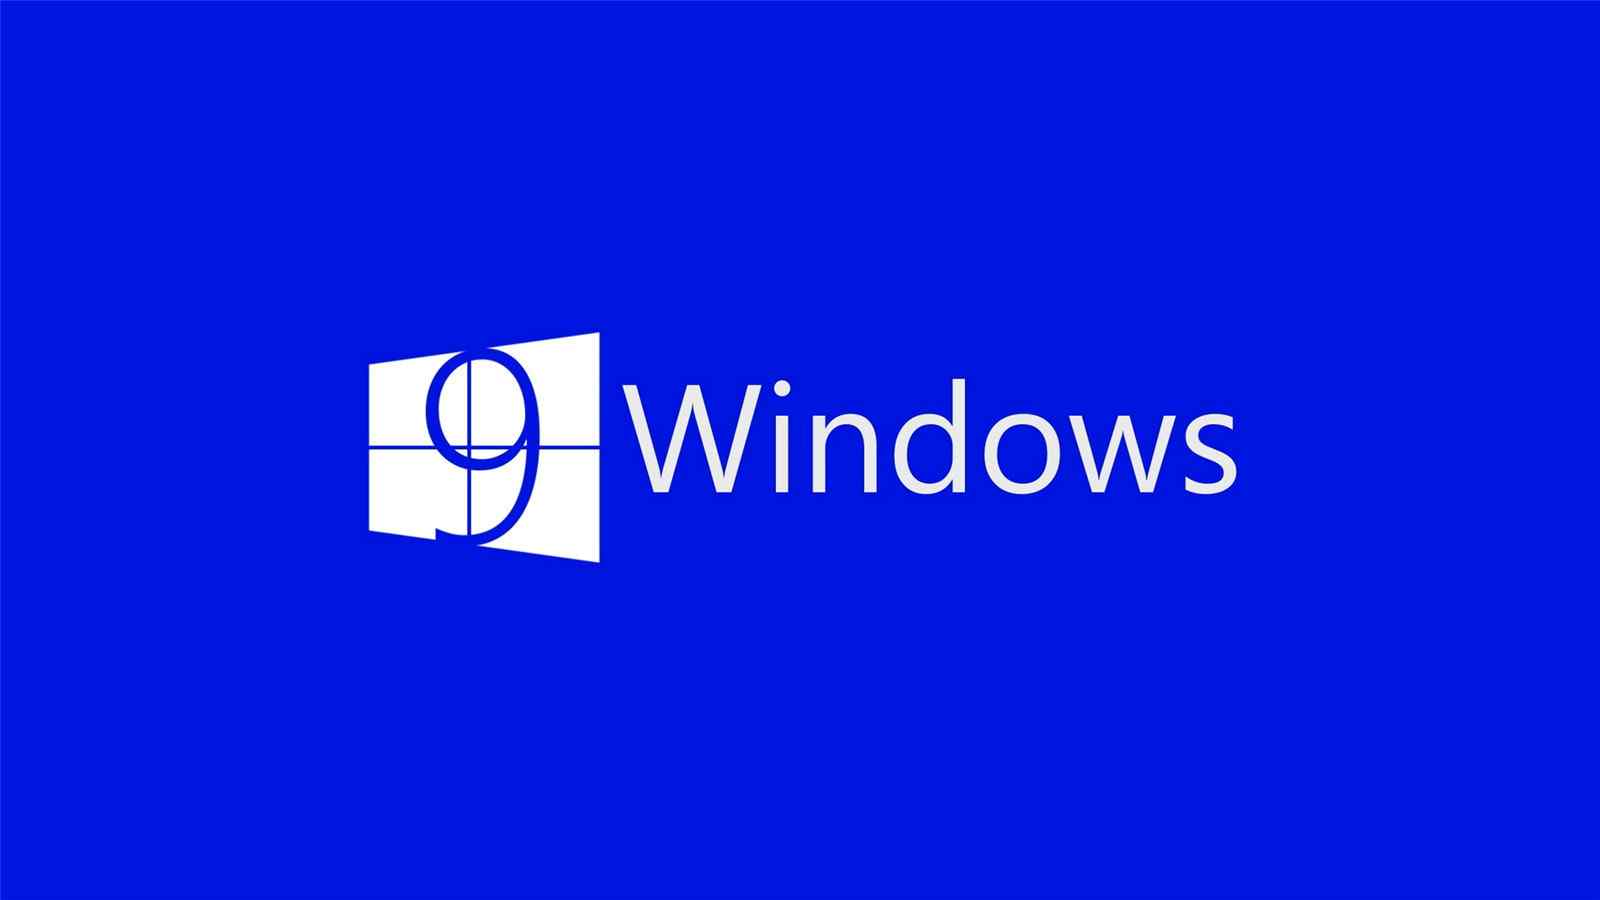 微软windows创意主题高清宽屏壁纸 第二辑